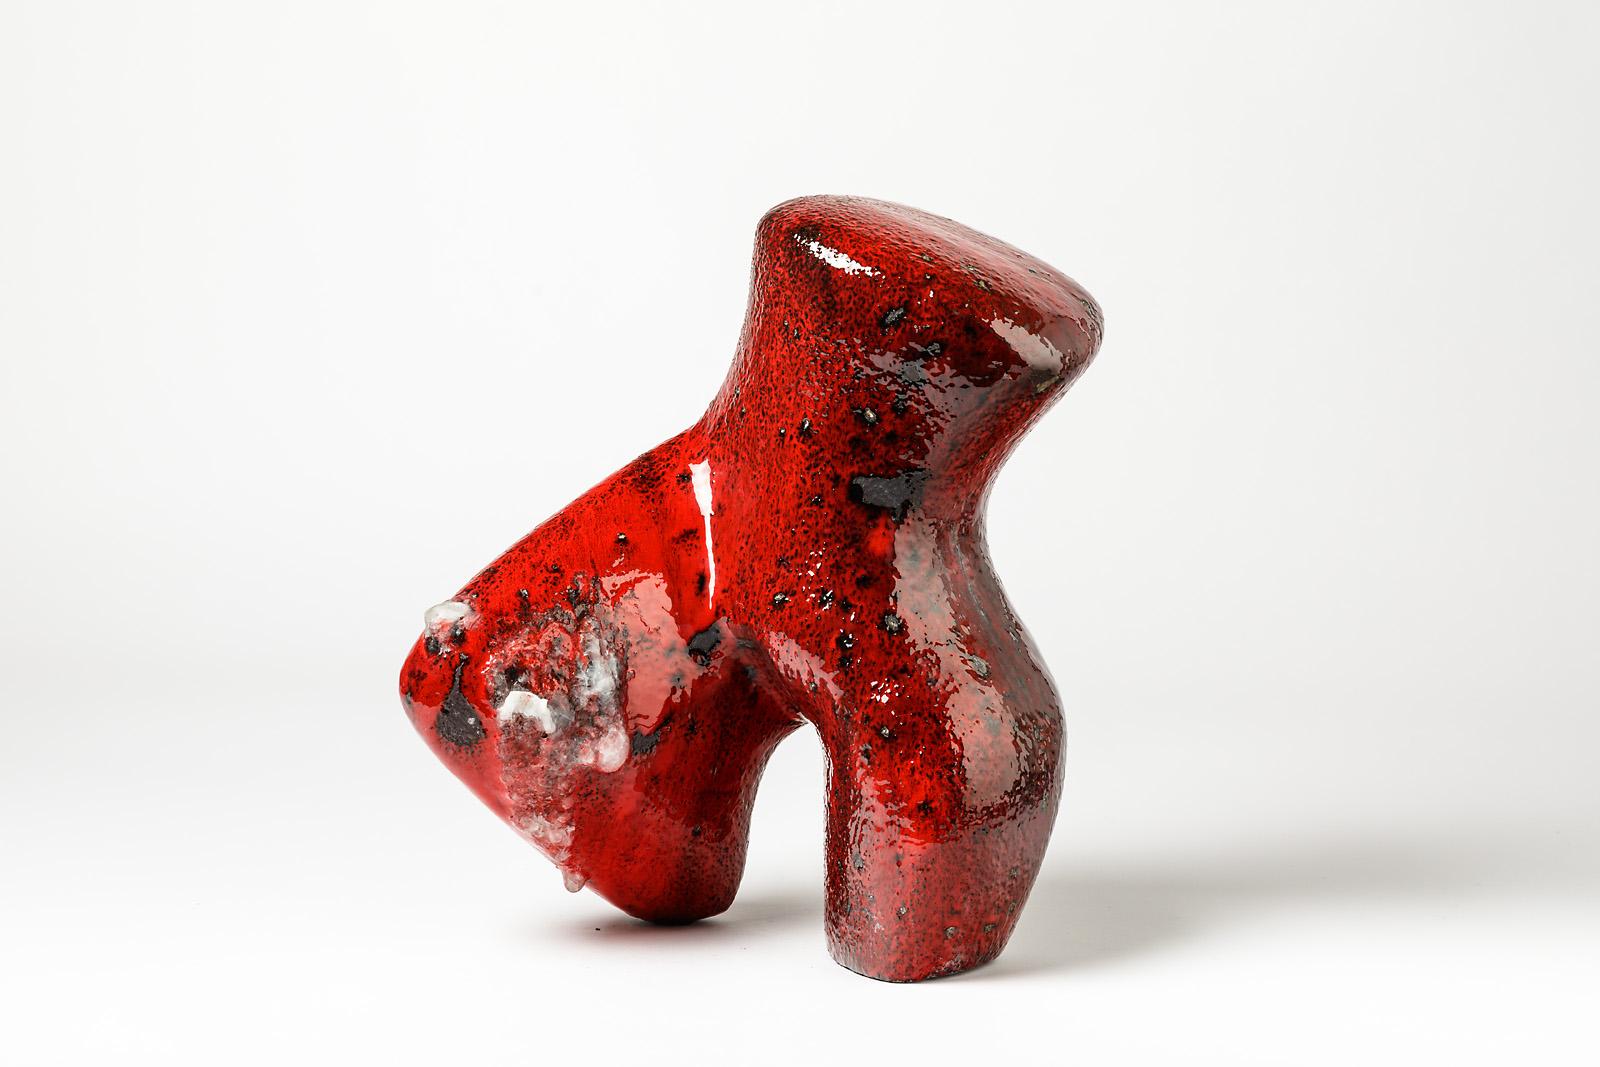 Une rare sculpture en céramique avec une décoration en glaçure rouge par Tim Orr.
Conditions d'origine parfaites.
Signé sous la base,
vers 1970-1980.